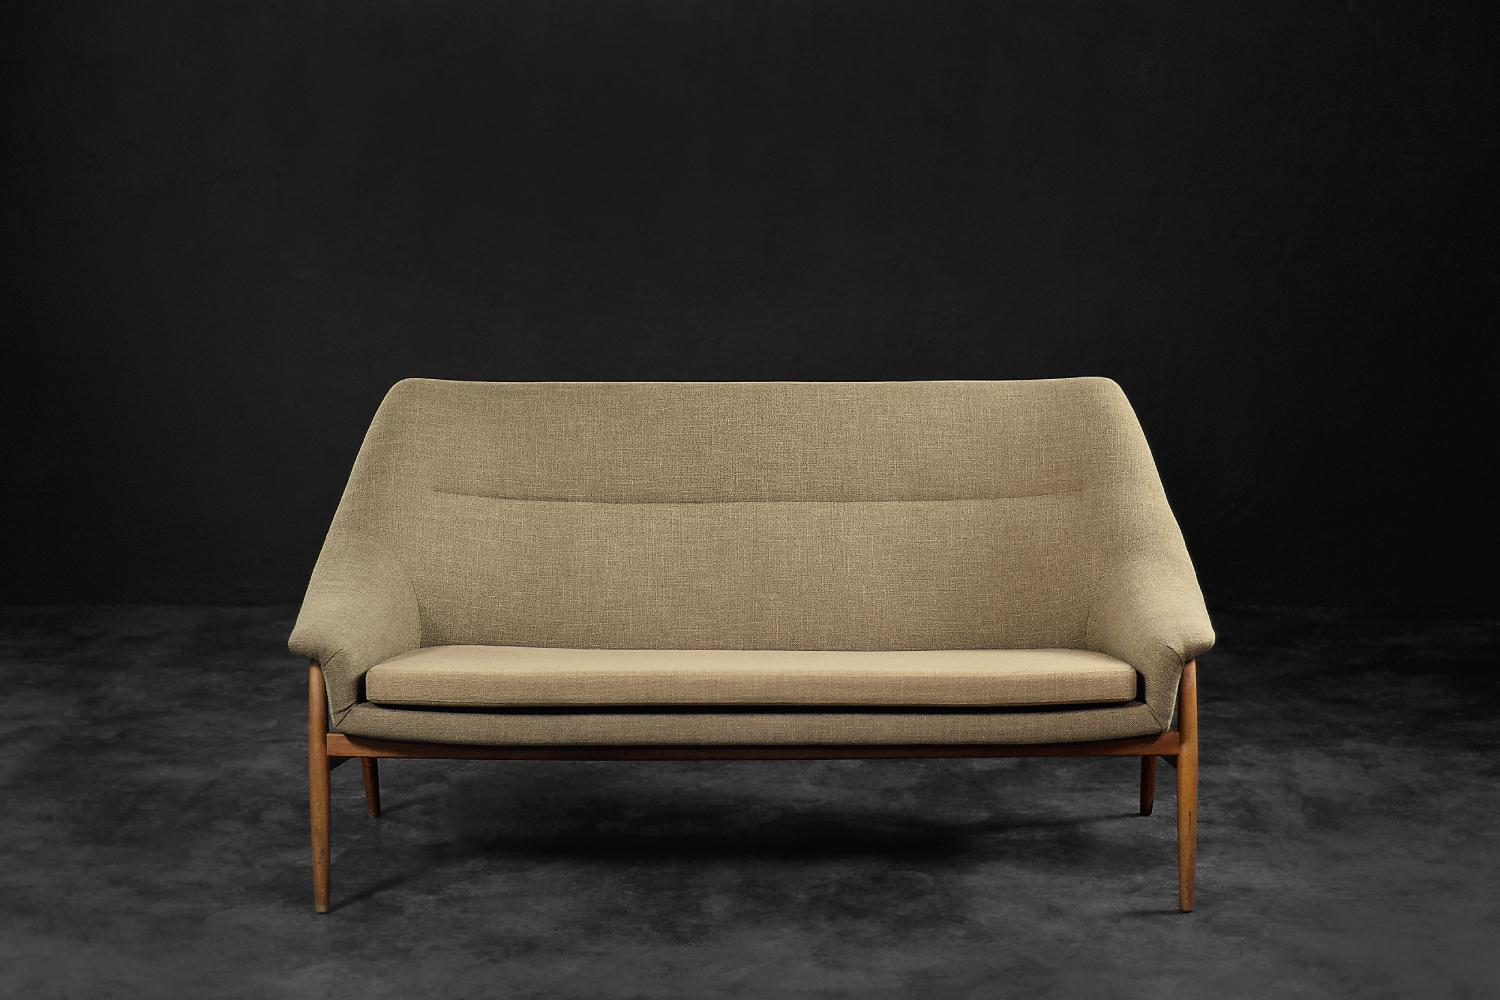 Dieses seltene zweisitzige Sofa Grace wurde 1961 von der schwedischen Firma IKEA hergestellt. Die sanft gerundete Form des Gestells, bei der die Rückenlehne fließend in Armlehnen übergeht, verleiht ihm Leichtigkeit und Außergewöhnlichkeit. Die